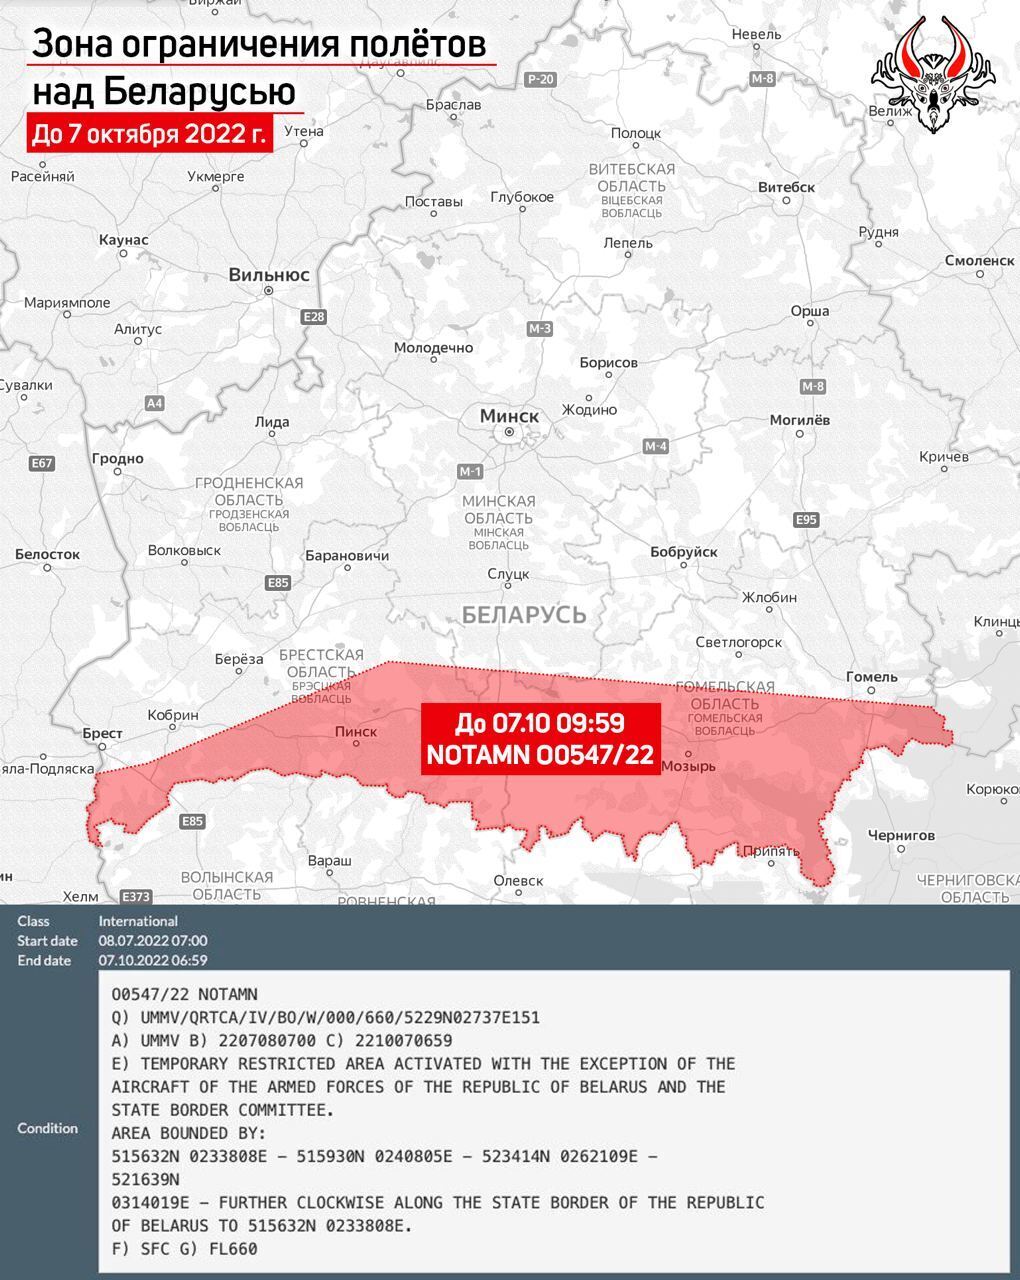 Белорусские власти продлили действие зоны ограничения для полетов гражданских самолетов на юге страны